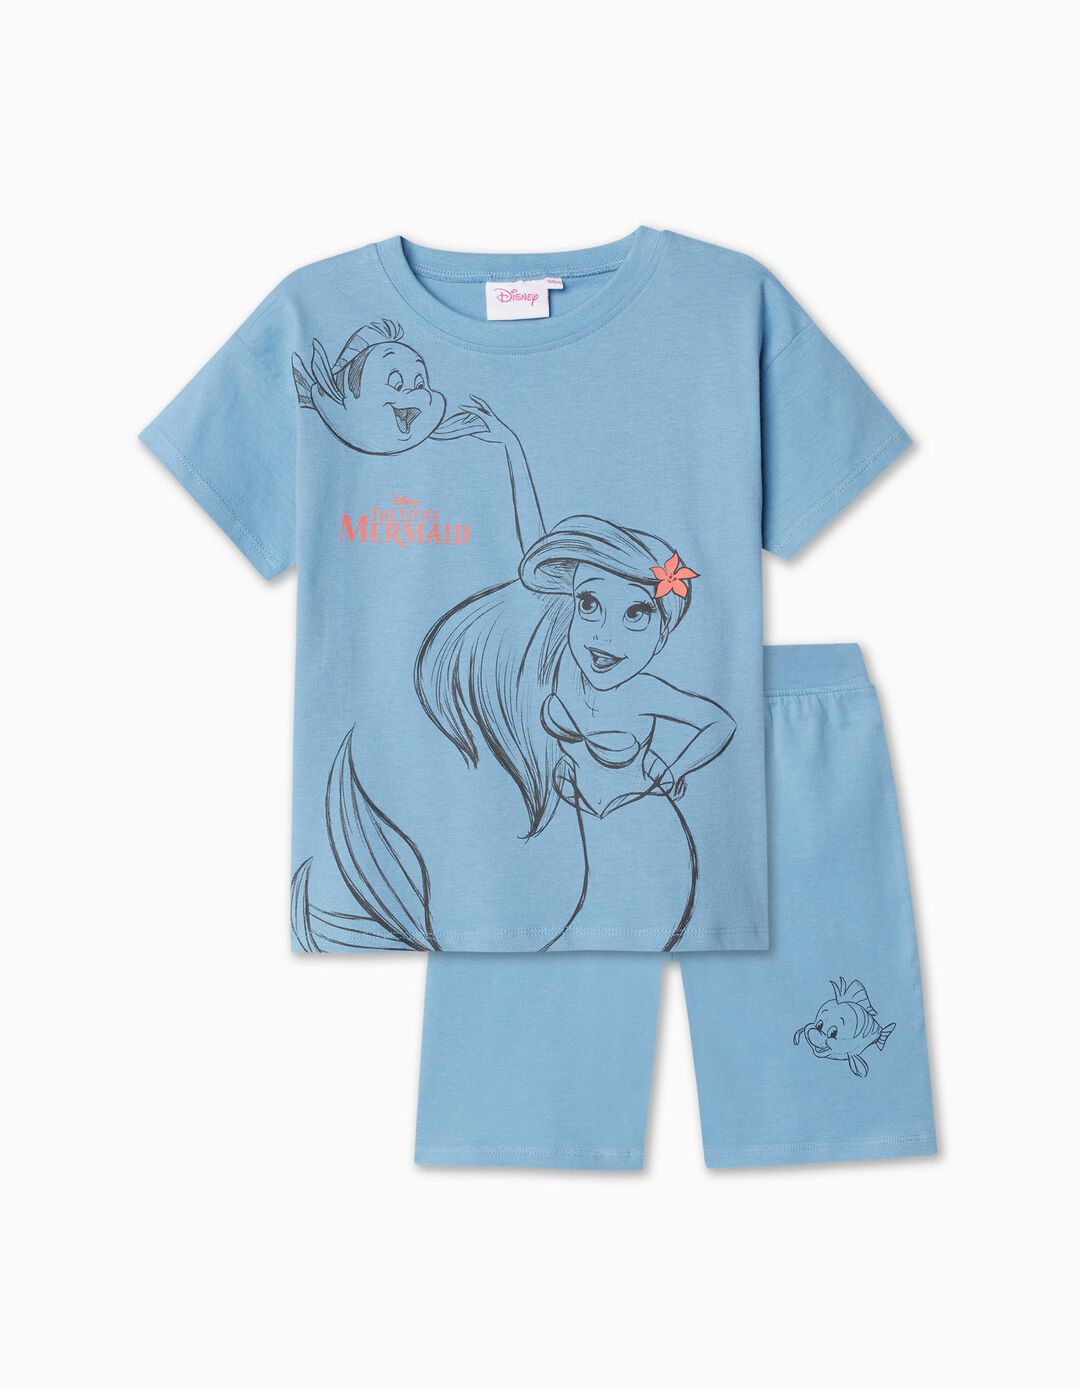 Conjunto T-shirt + Calções 'A Pequena Sereia', Menina, Azul Claro